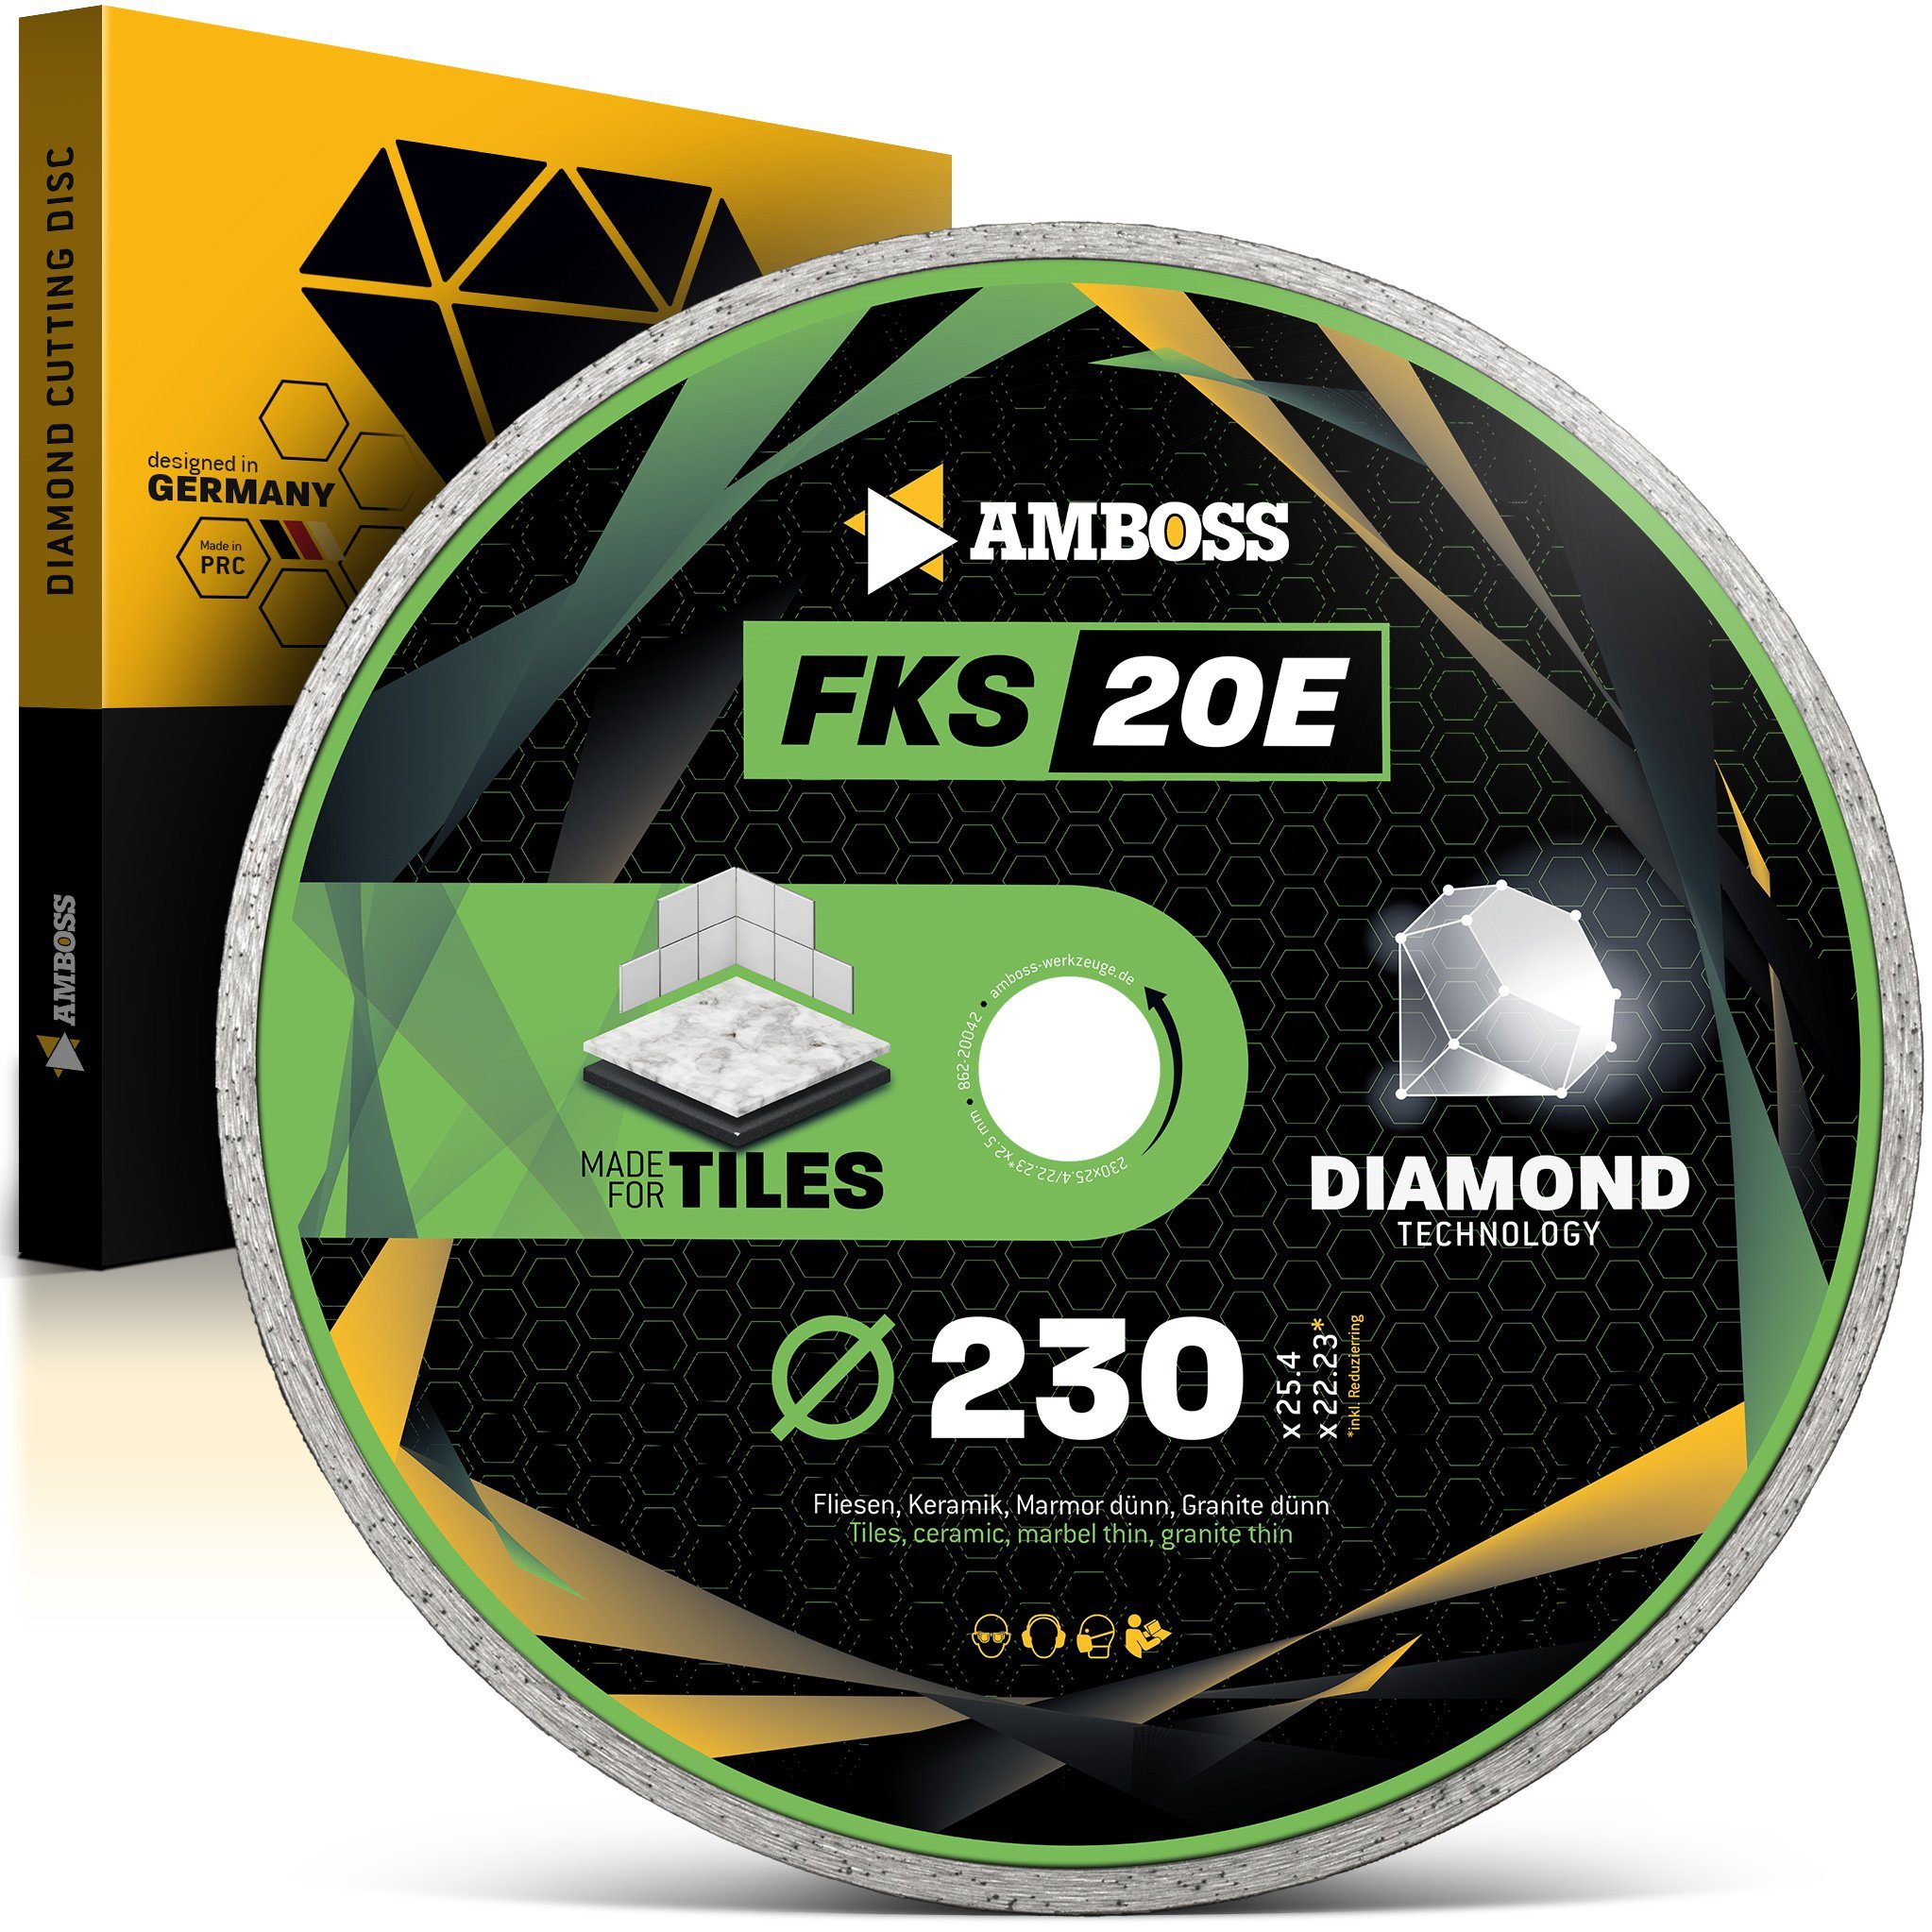 FKS Werkzeuge Amboss mm (Bohrung) 20E 2.5 25.4/22.2 2.5 mm Trennscheibe (Dicke) x Amboss Kreissägeblatt 230mm Diamant x,